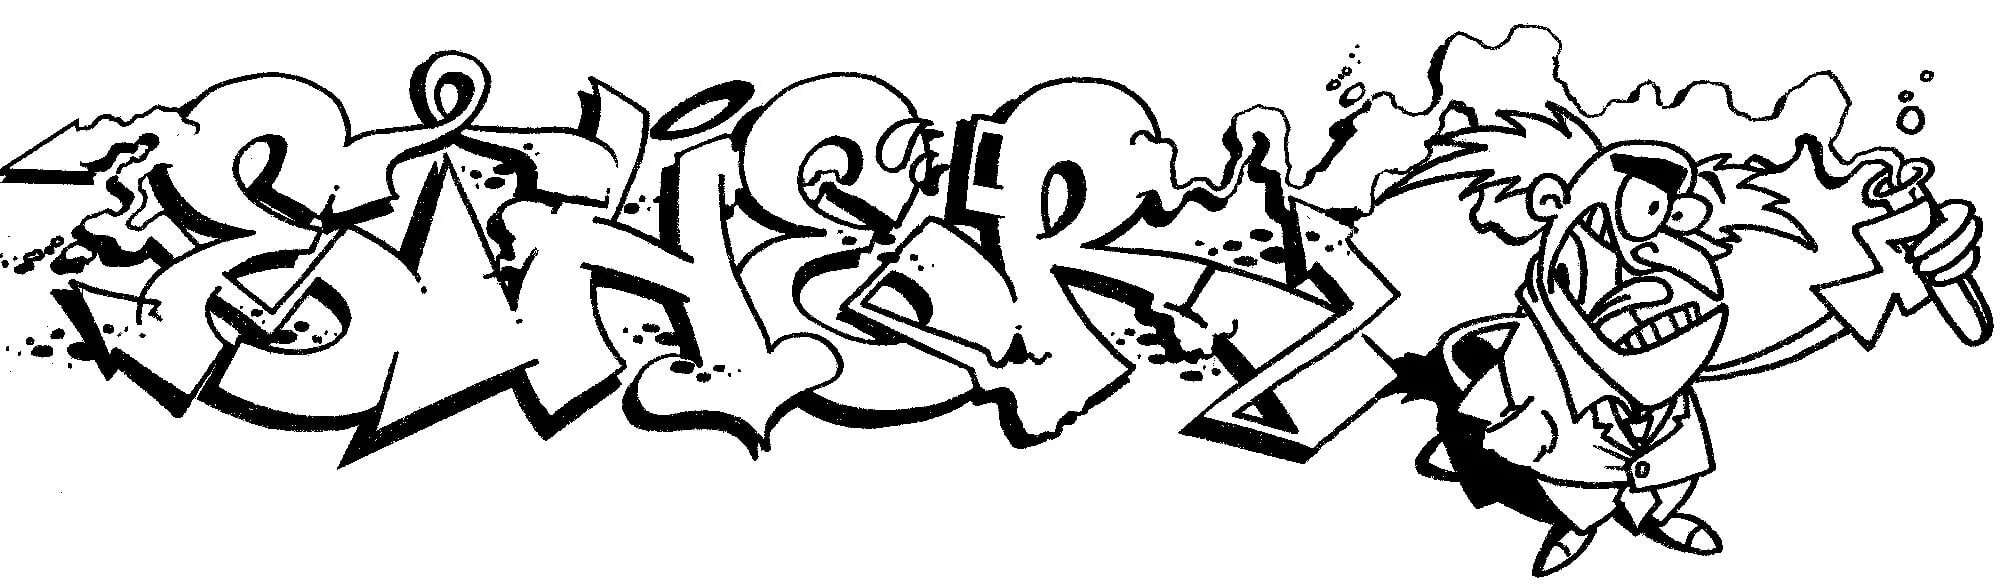 Graffiti sketch #11